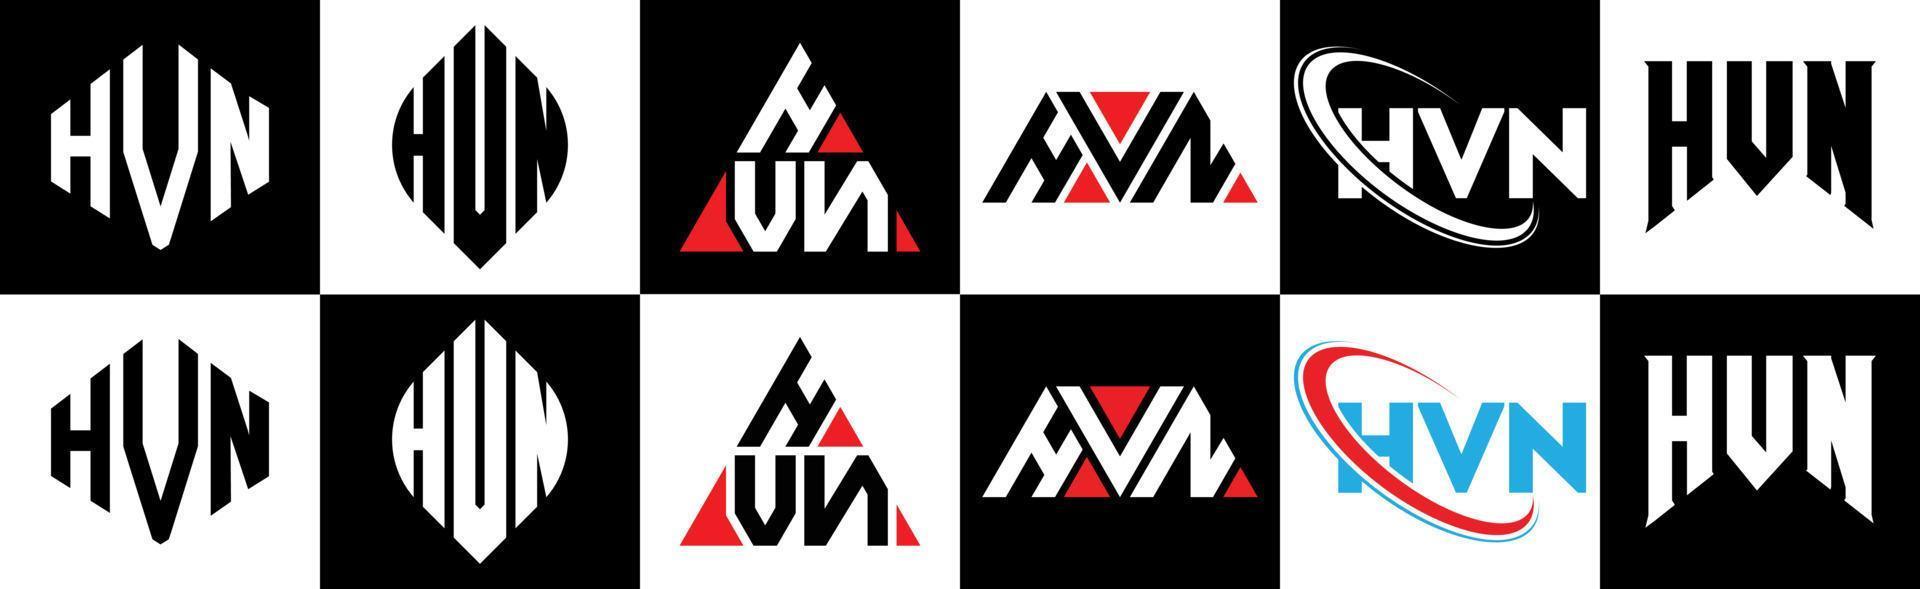 création de logo de lettre hvn en six styles. hvn polygone, cercle, triangle, hexagone, style plat et simple avec logo de lettre de variation de couleur noir et blanc dans un plan de travail. logo hvn minimaliste et classique vecteur